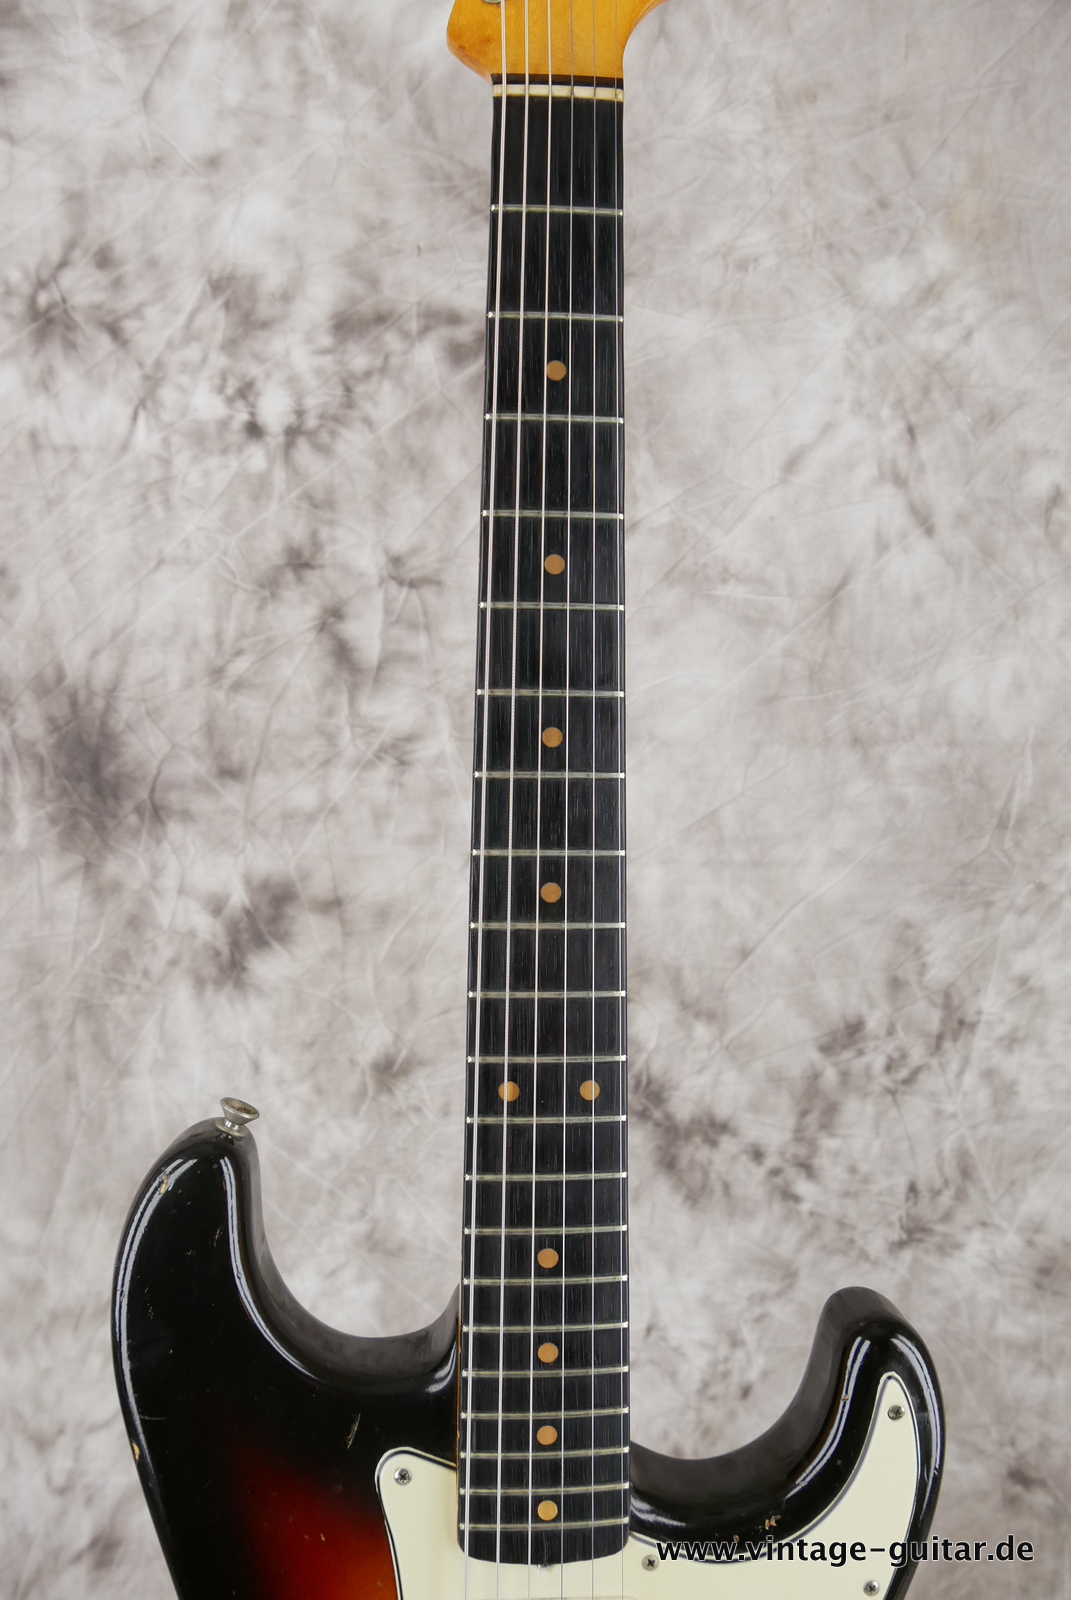 Fender_Stratocaster_sunburst_1963-011.JPG